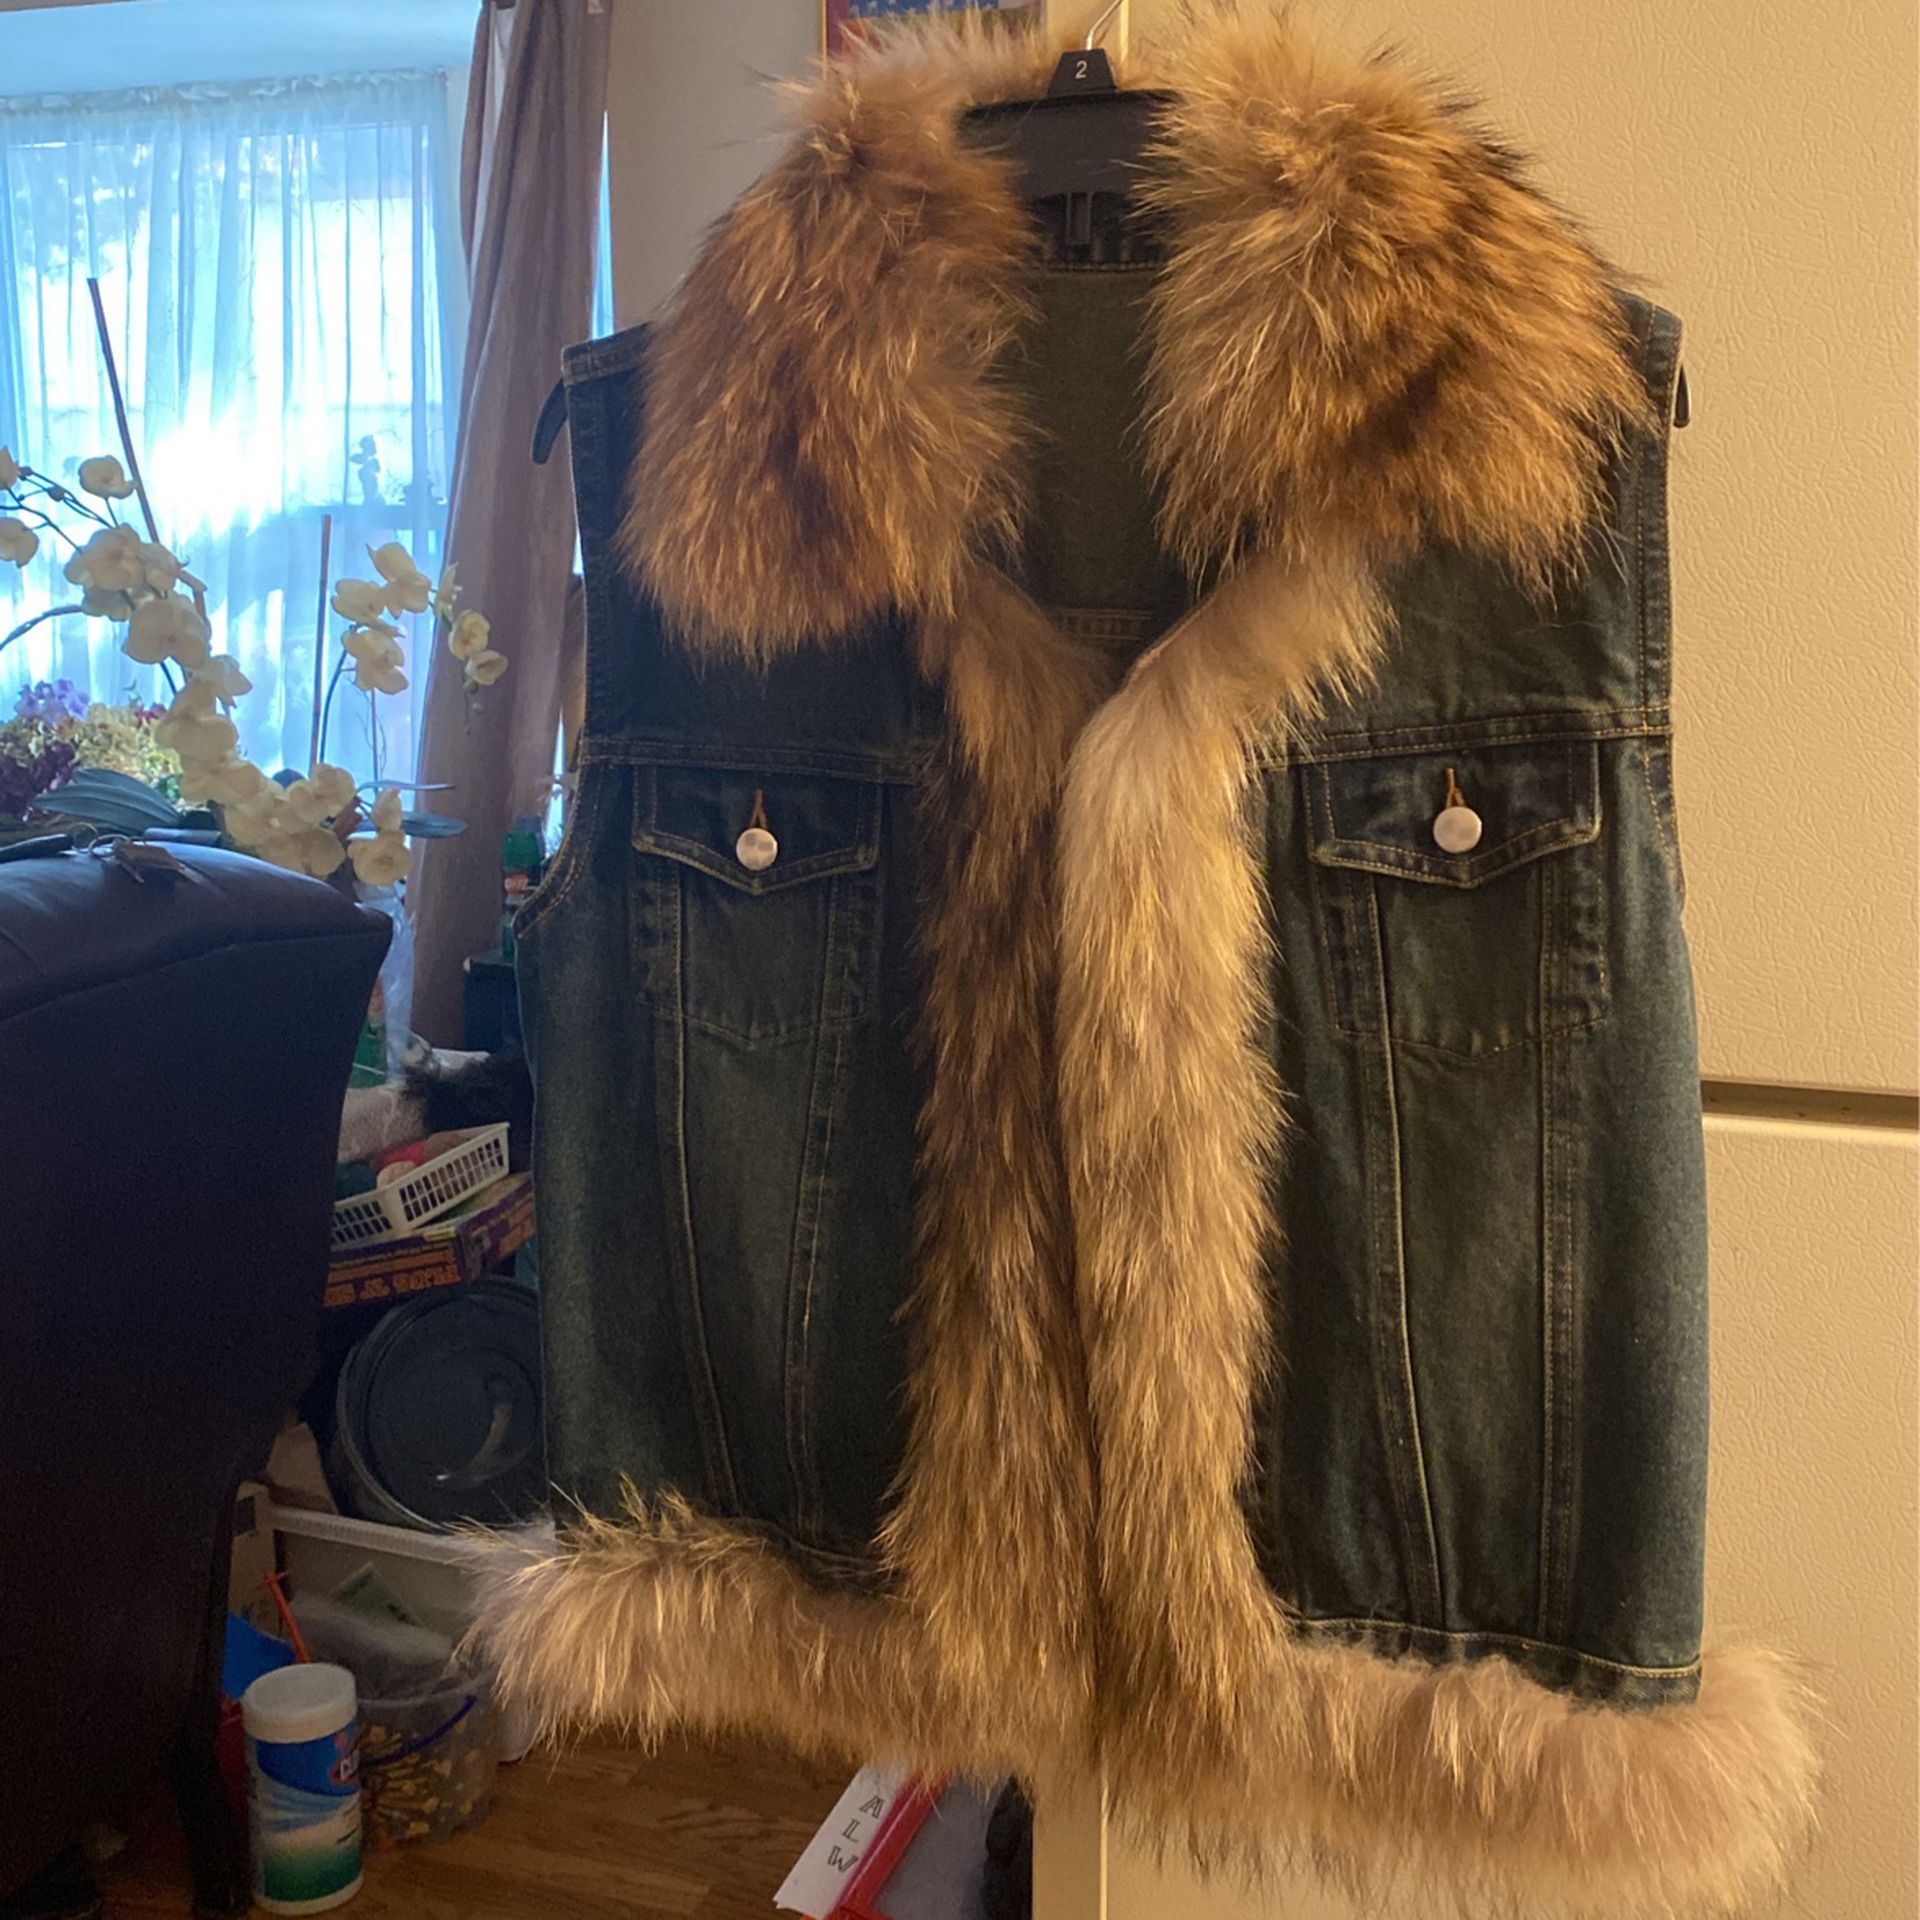 Jean Vest With Fur, 100% Cotton, Size M